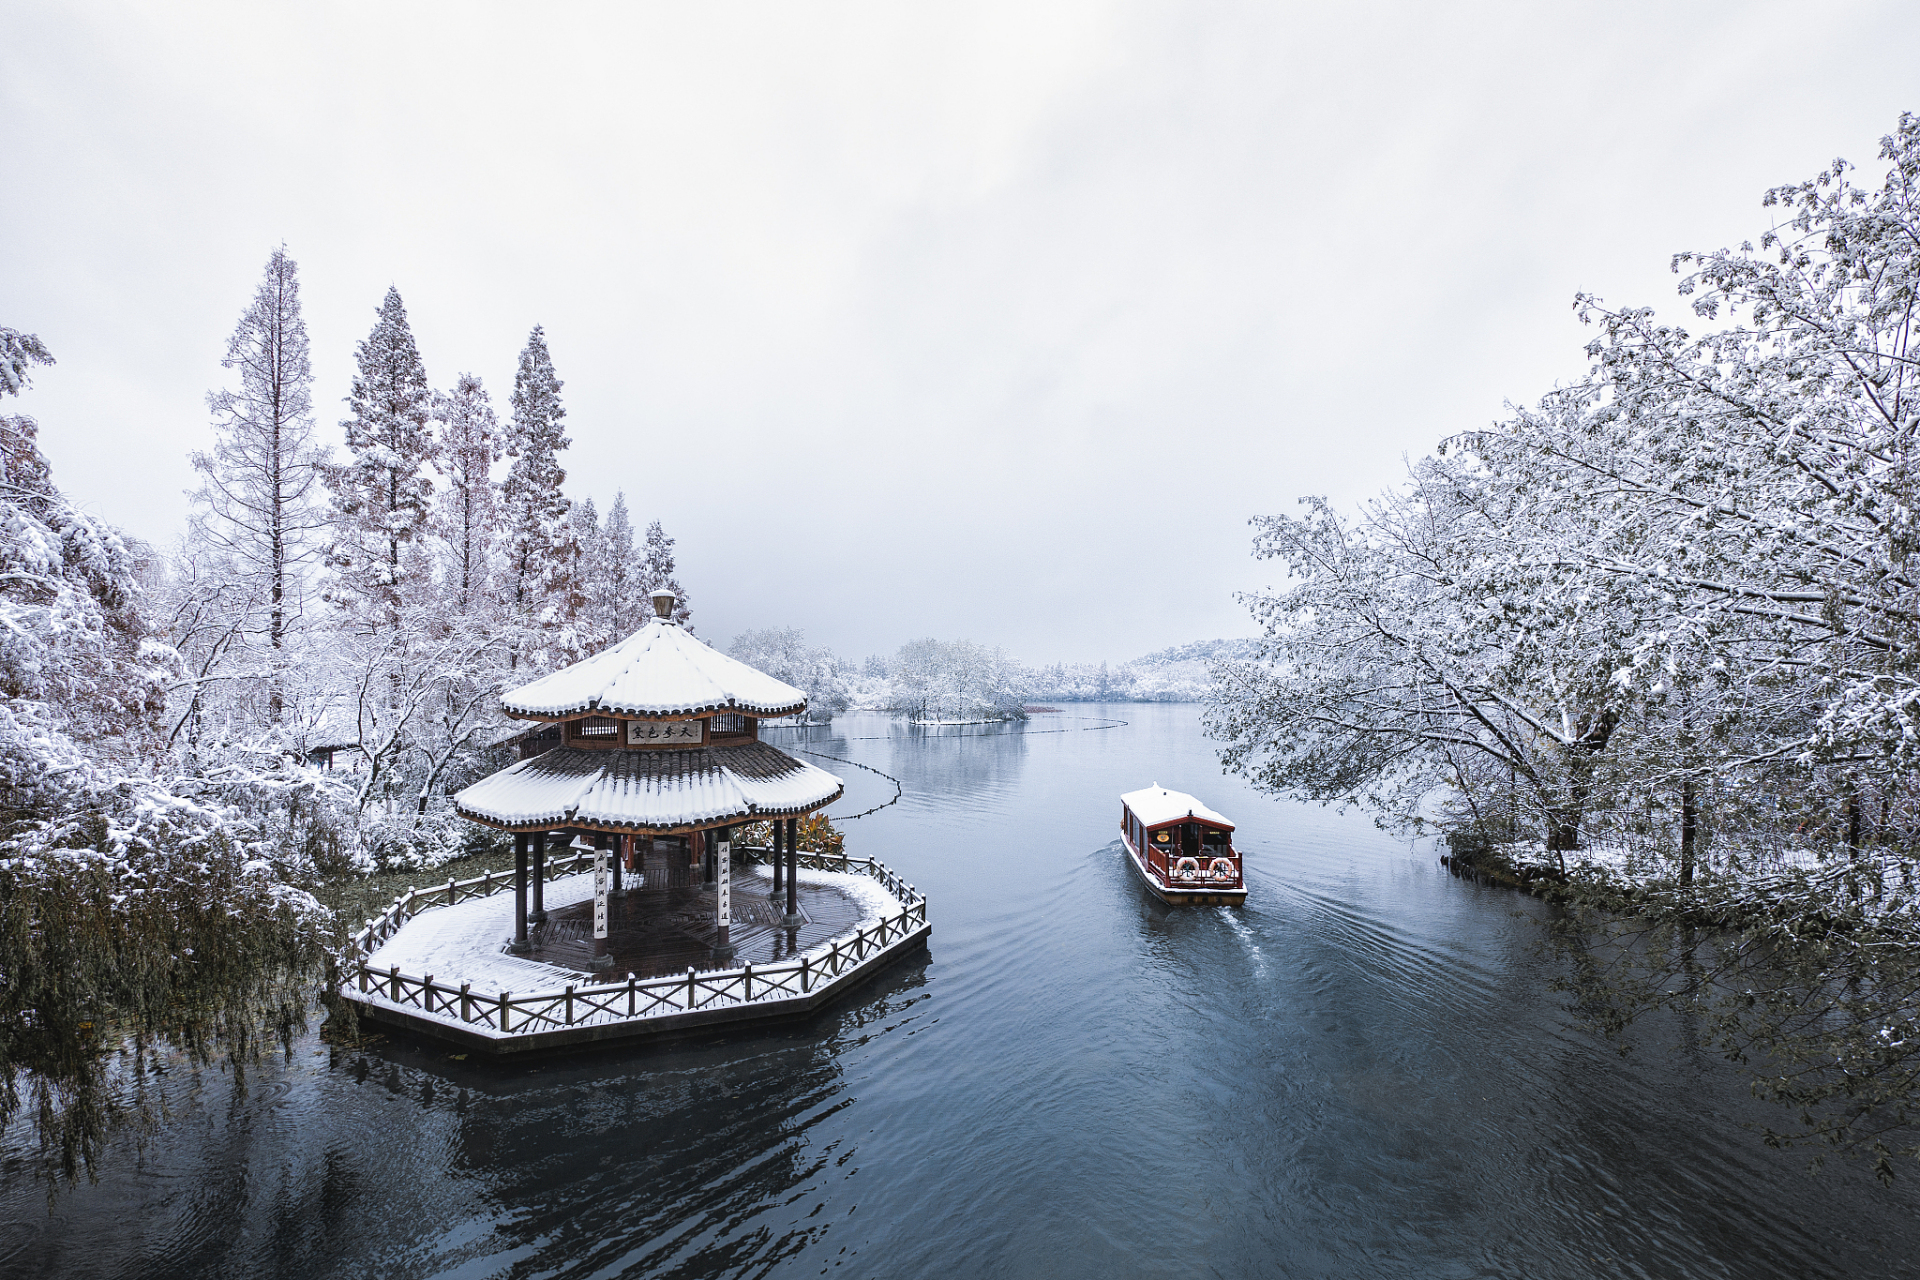 冬日西湖雪,诗意浓墨重彩的画卷  在冬季的杭州,西湖的美景如同一幅幅